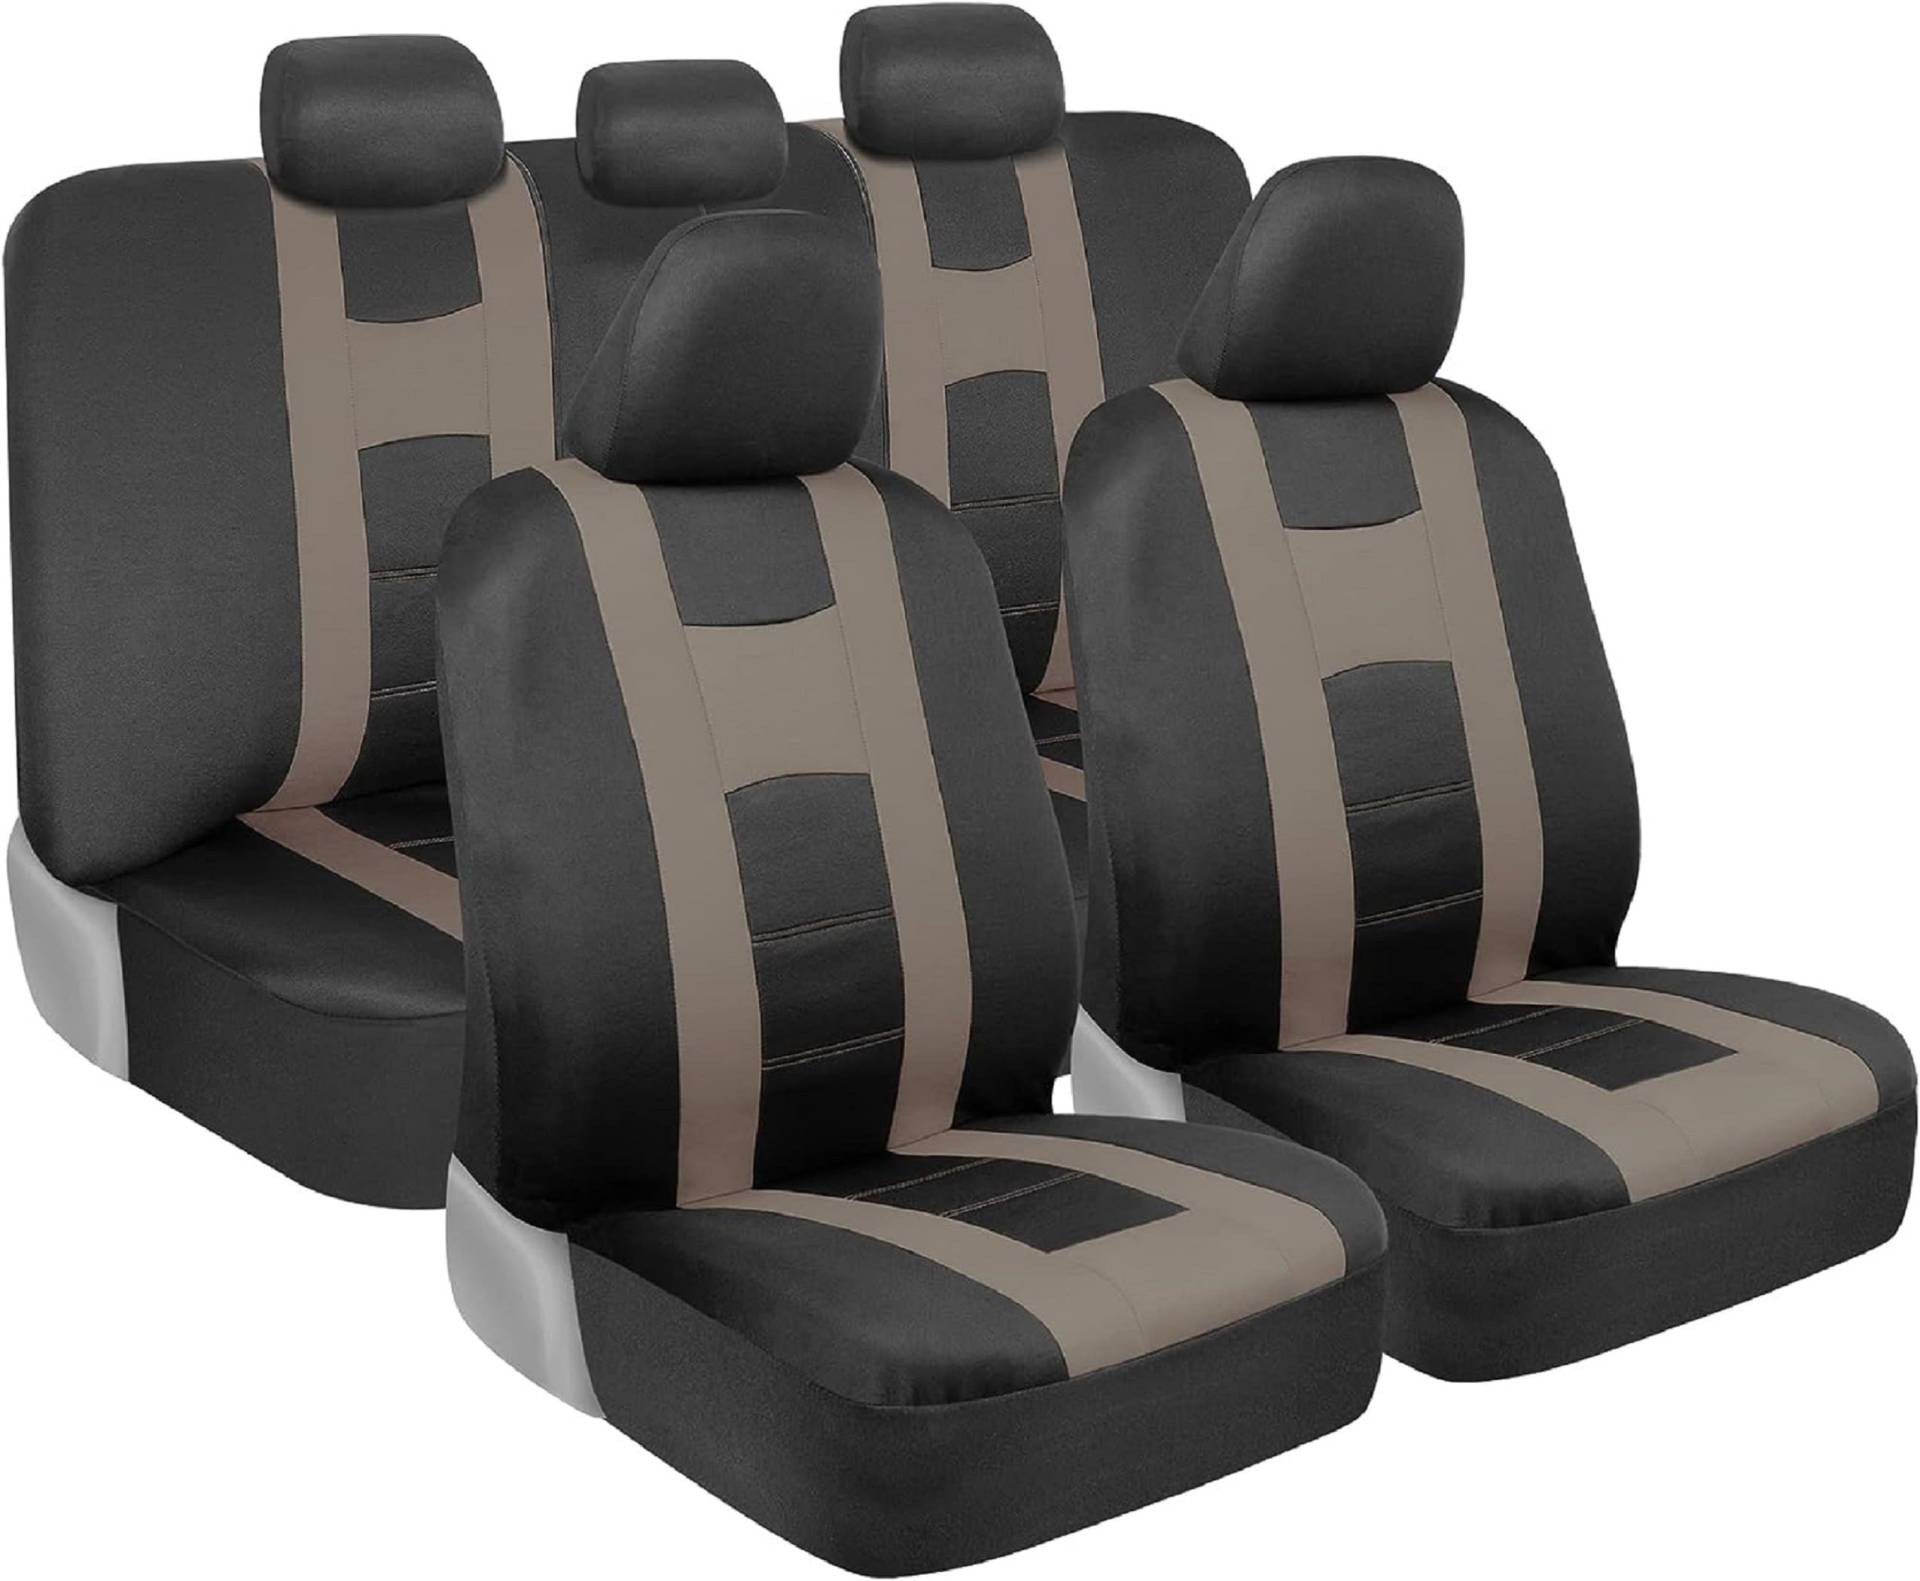 BDK carXS Sitzbezüge für Autos, beige, zweifarbige Autositzbezüge mit passendem Rücksitzbezug, passend für die meisten Pkw, LKW, Van, SUV, Innenausstattung, Autositzbezug, komplettes Set von BDK